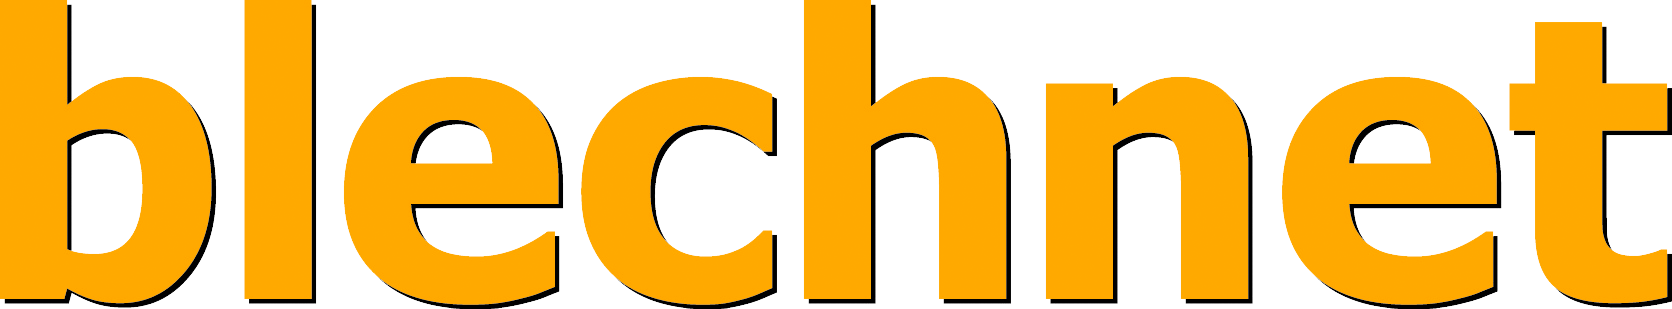 Blechnet Logo